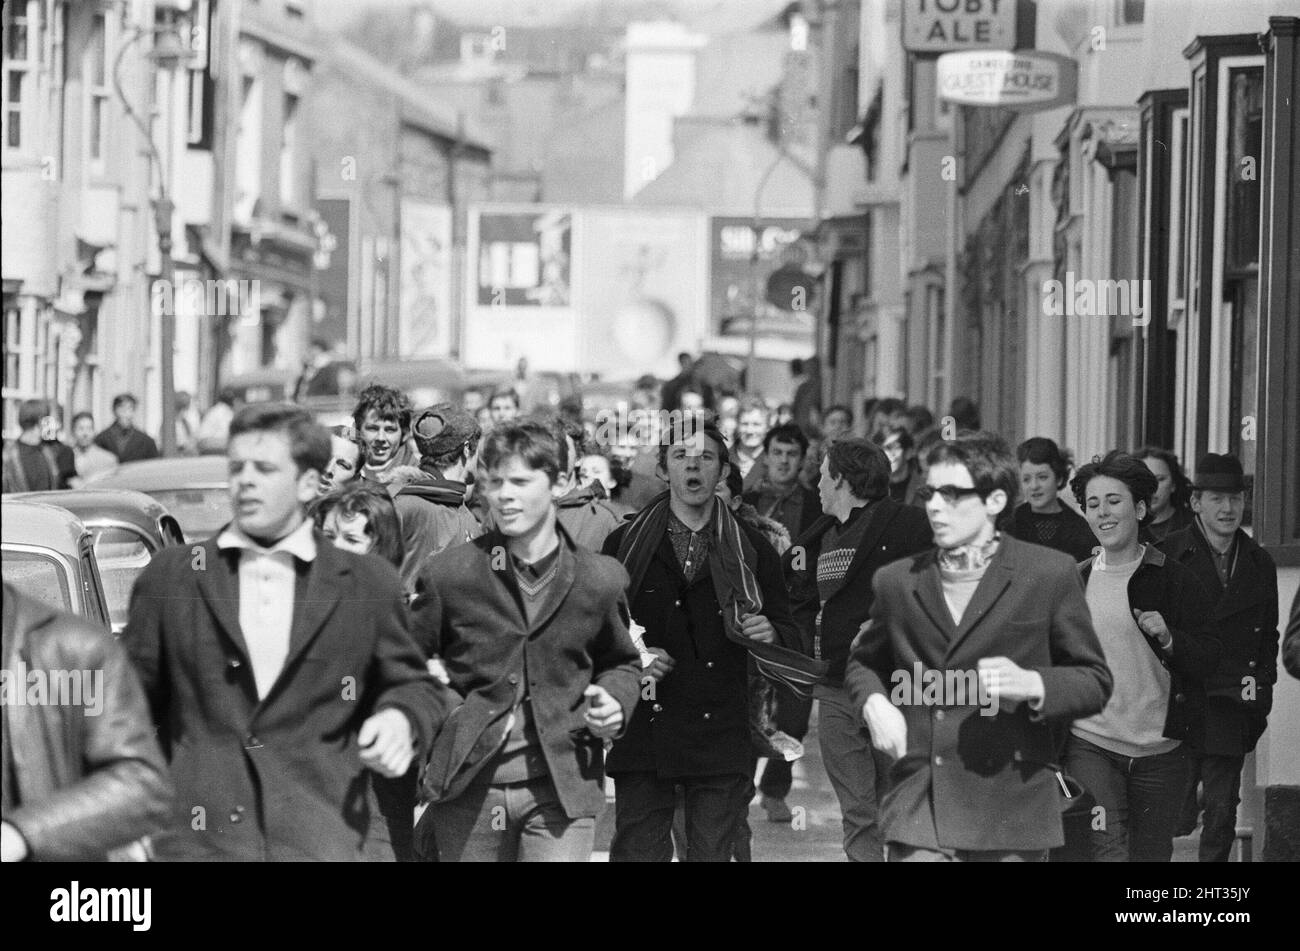 Die Mods und Rockers waren zwei widersprüchliche britische Jugendsubkulturen von Anfang bis Mitte 1960s. Die Berichterstattung über die Kämpfe von Mods und Rockern im Jahr 1964 löste eine moralische Panik über britische Jugendliche aus, und die beiden Gruppen wurden als Volksteufel bezeichnet. Mods, die durch die Straßen von Brighton laufen. 18.. April 1965. Stockfoto